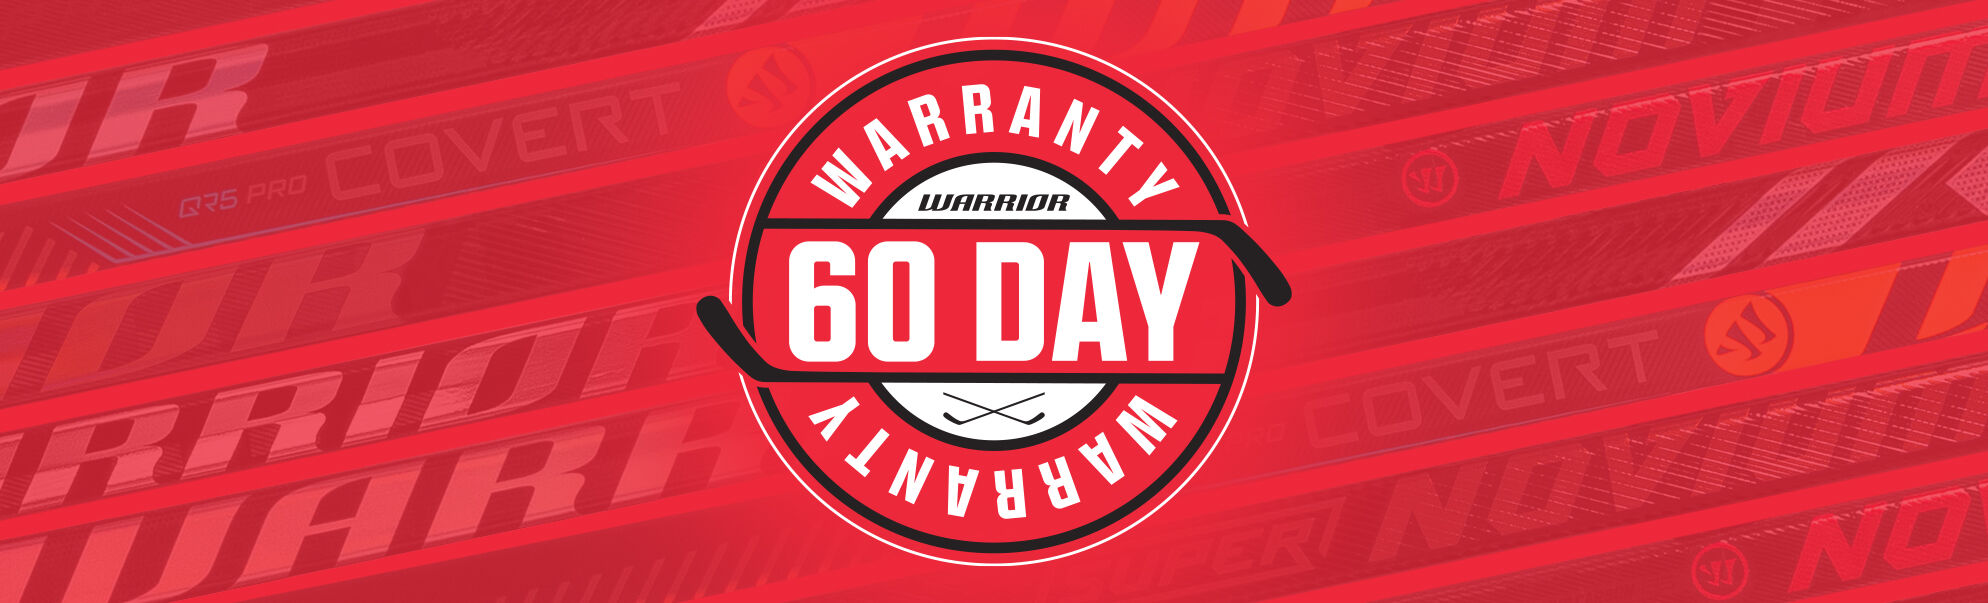 Warrior Hockey Pro Stick Warranty